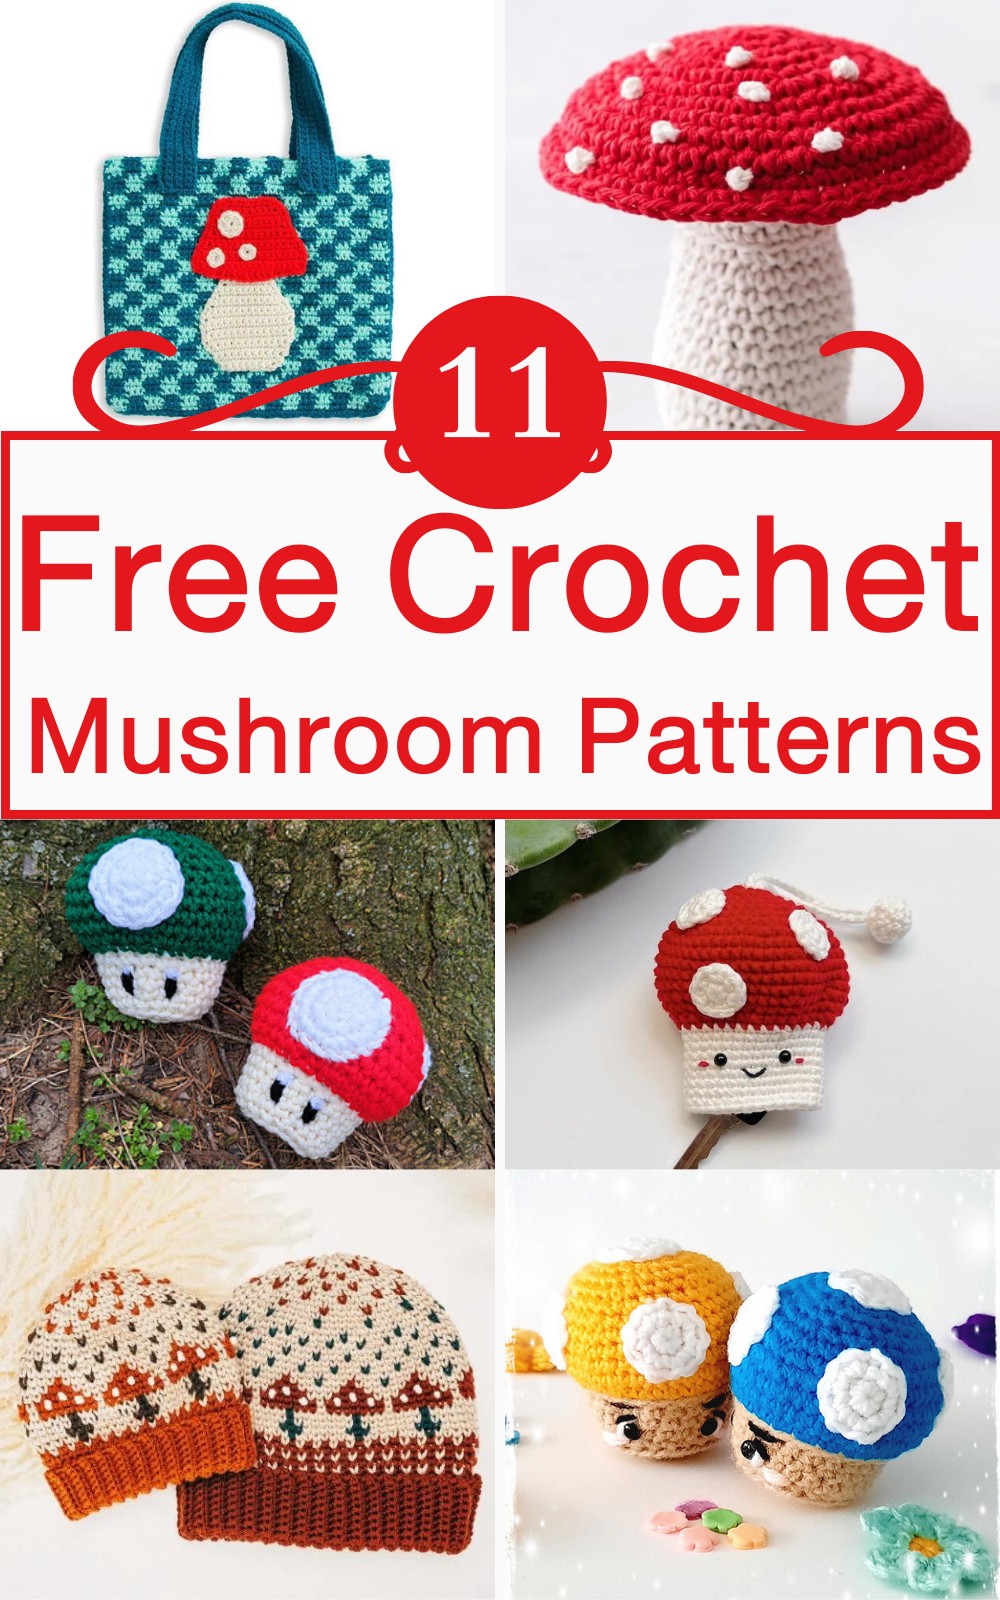 11 Free Crochet Mushroom Patterns